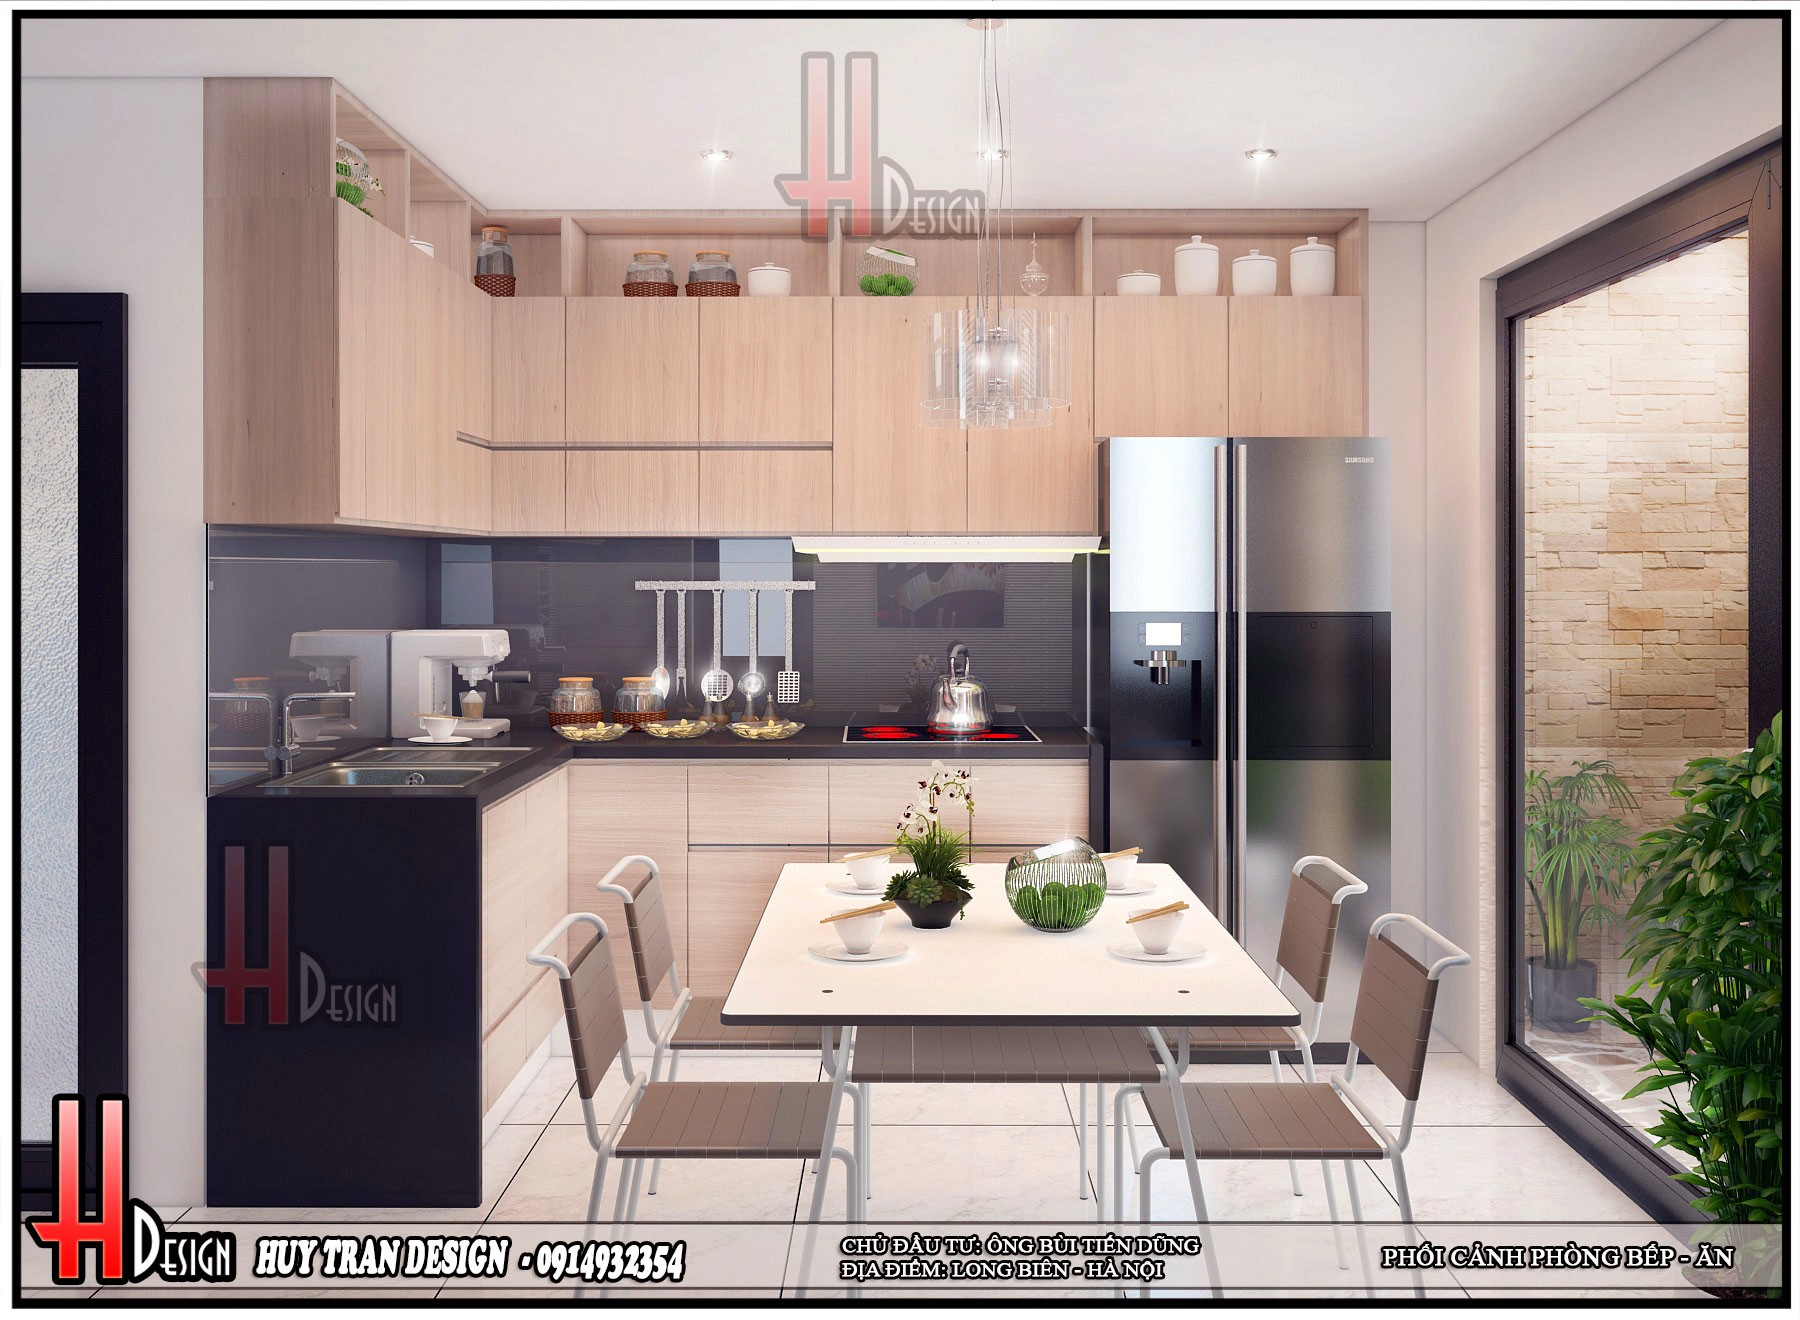 Thiết kế nội thất phòng bếp nhà phố 4 tầng - Huytrandesign